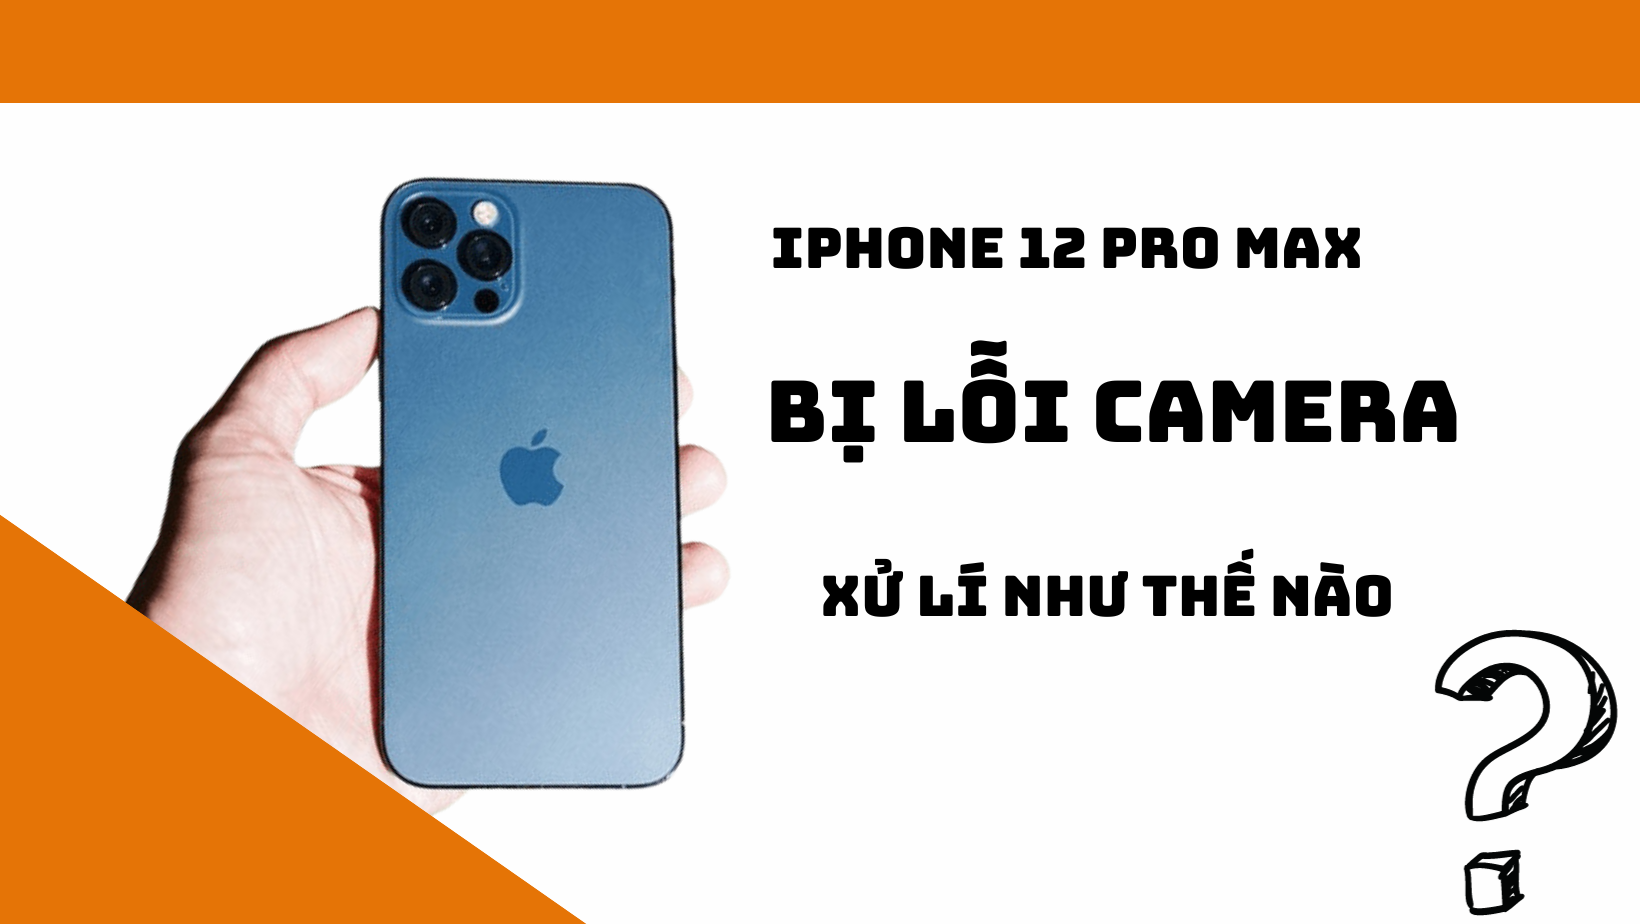 Đừng để lỗi camera làm hỏng trải nghiệm chụp ảnh của bạn trên iPhone 12 Pro Max